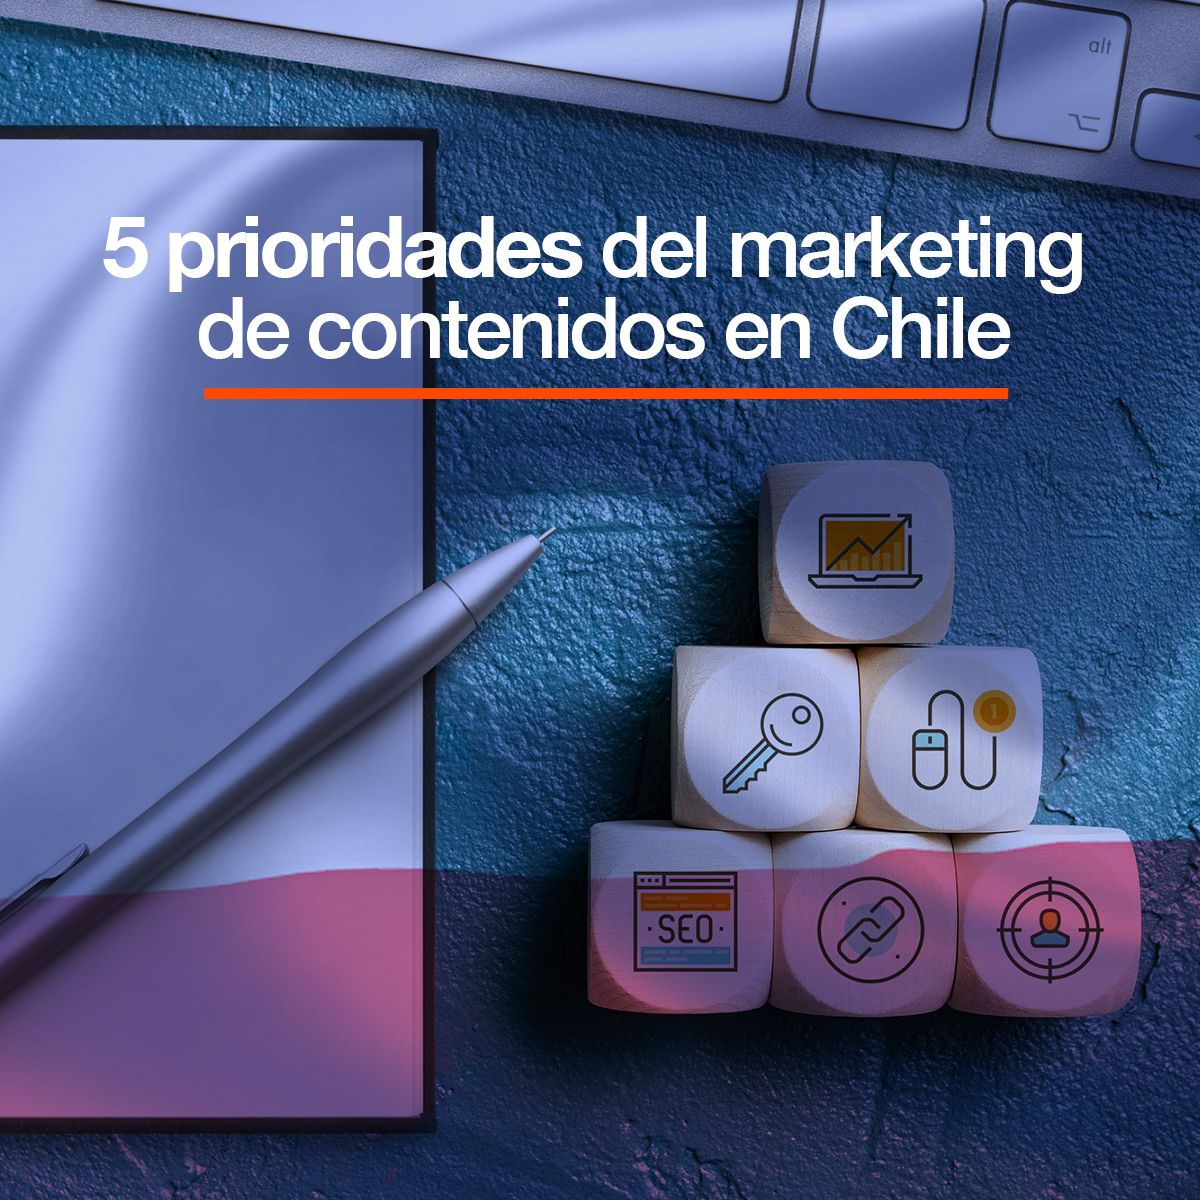 5 prioridades del marketing de contenidos en Chile